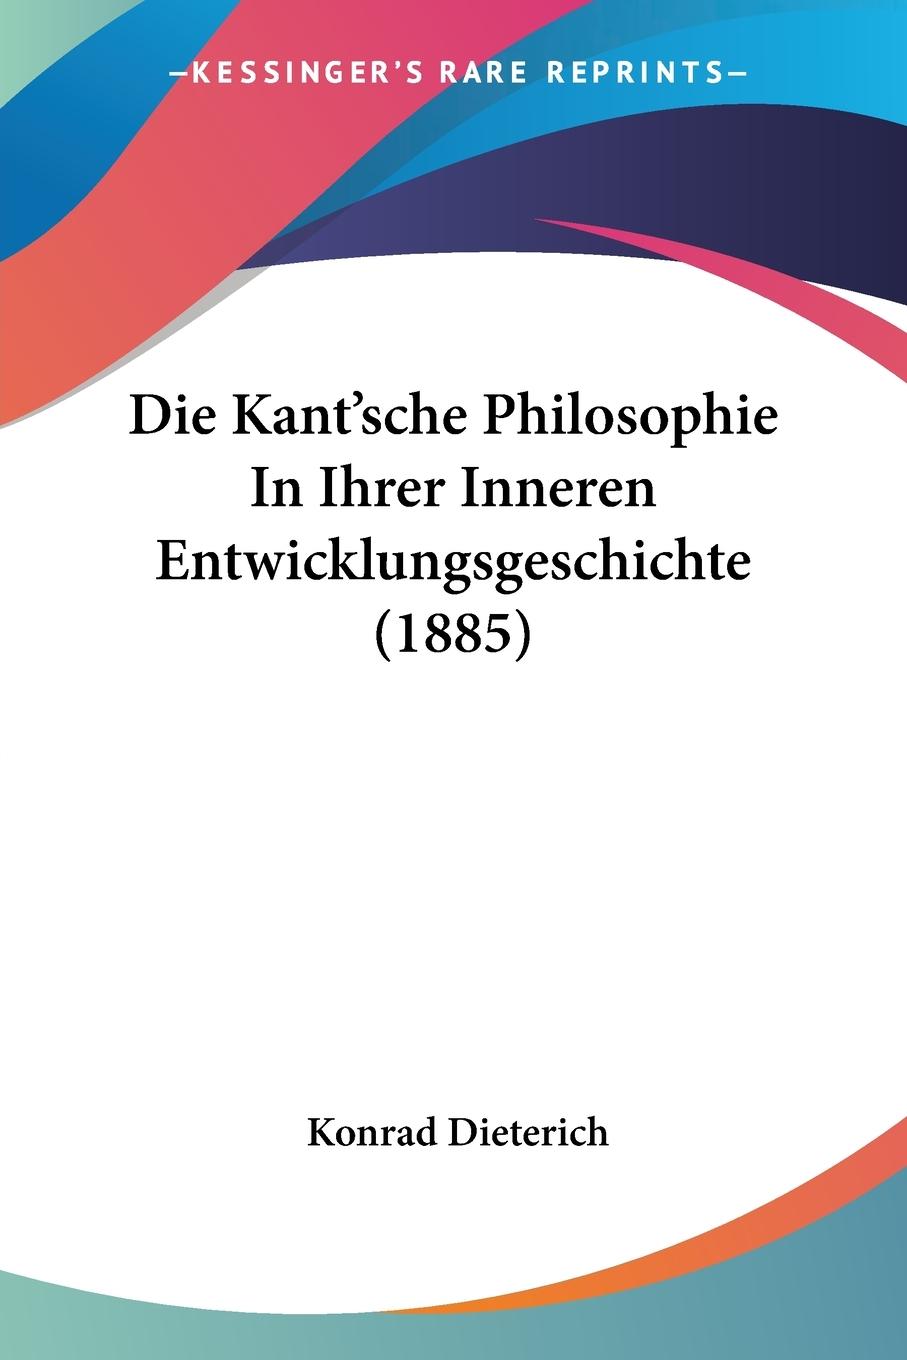 Die Kant sche Philosophie In Ihrer Inneren Entwicklungsgeschichte (1885) - Dieterich, Konrad